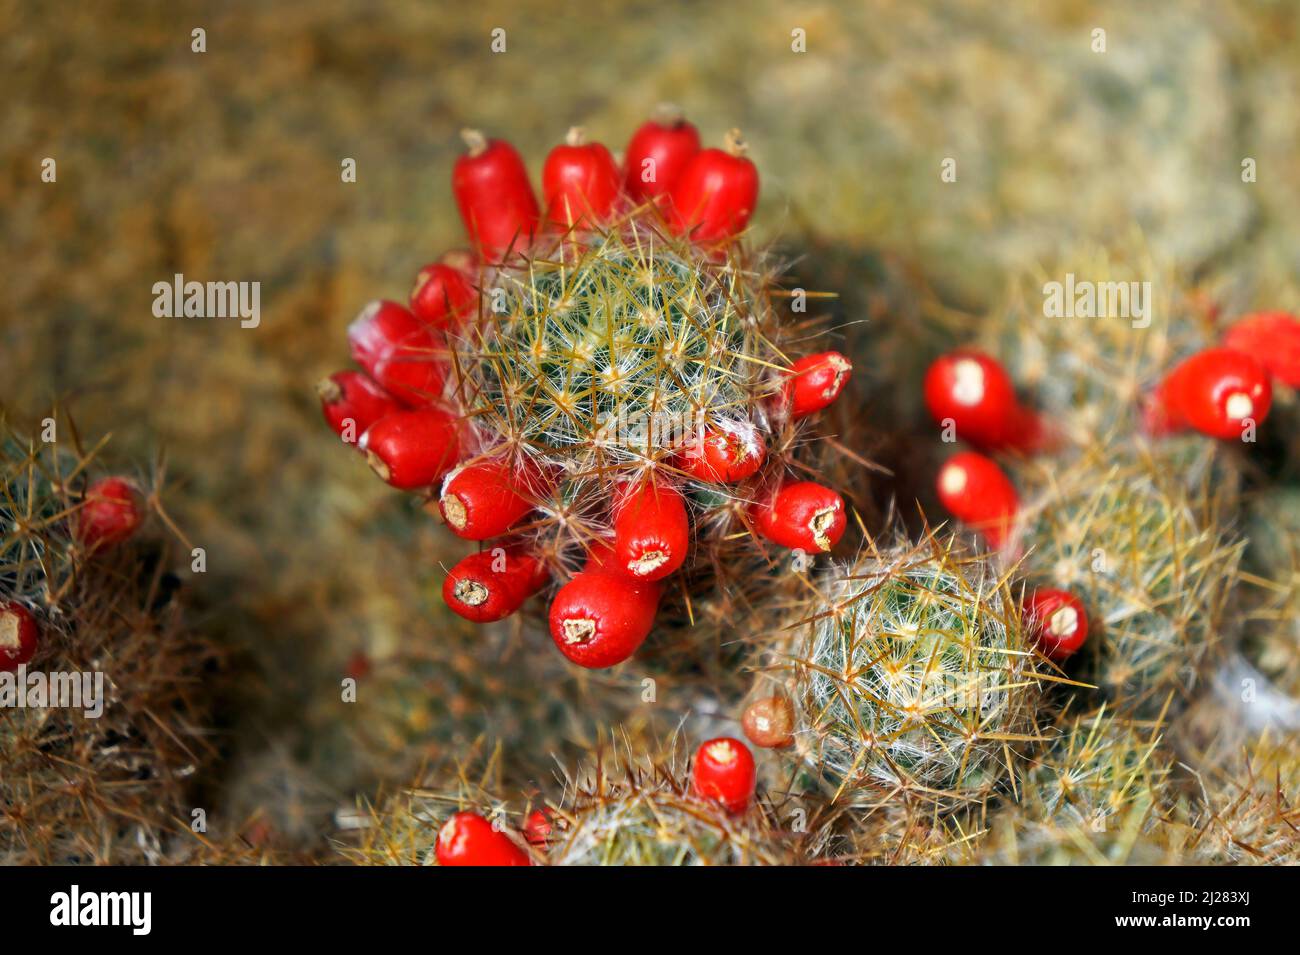 Fruits de cactus mamelons du Texas (Mammillaria prolifera) Banque D'Images